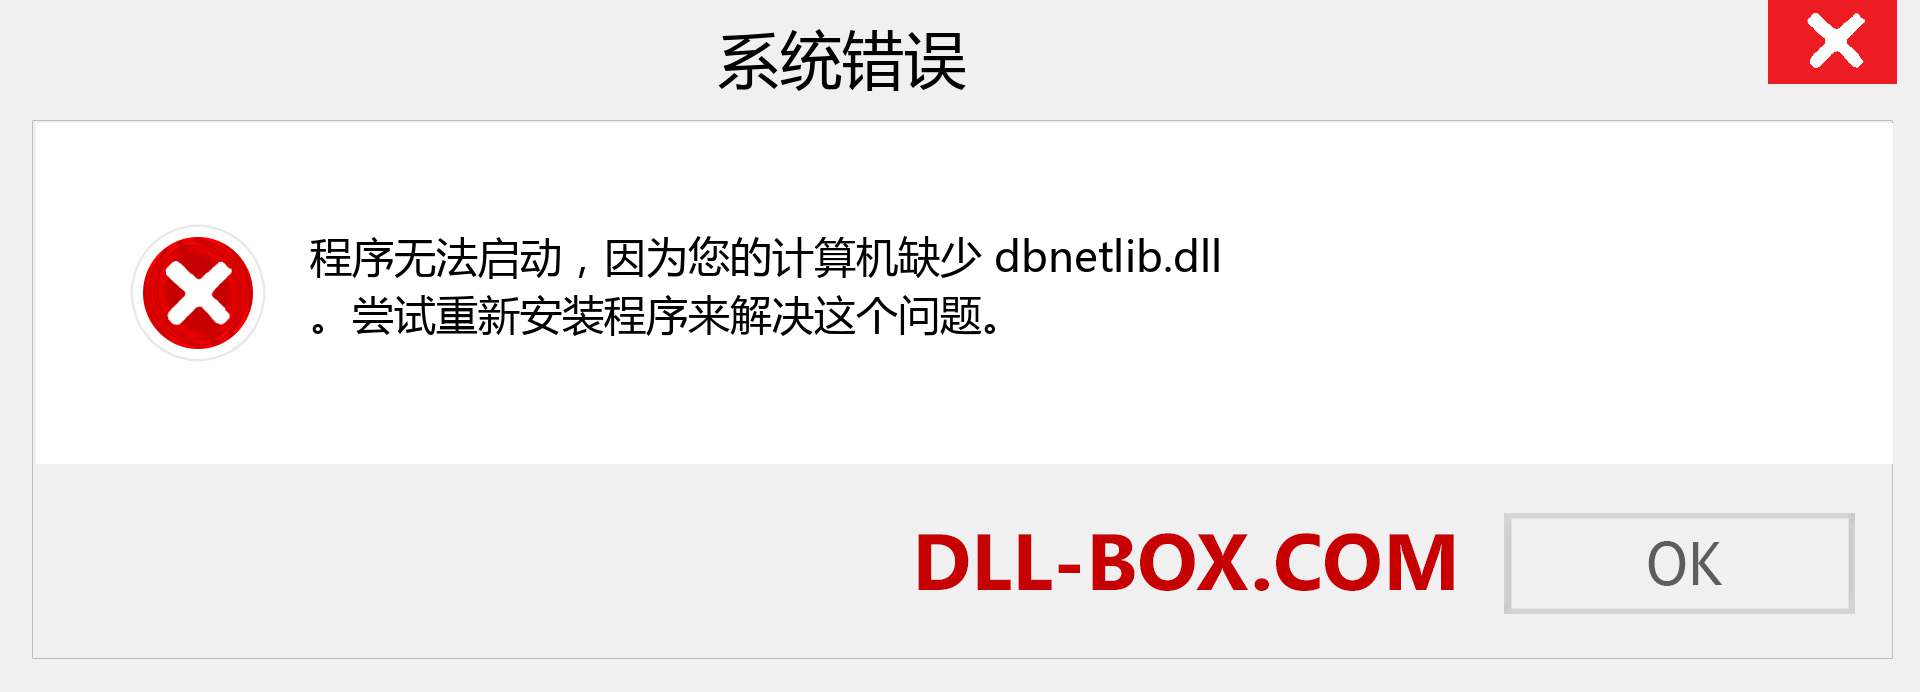 dbnetlib.dll 文件丢失？。 适用于 Windows 7、8、10 的下载 - 修复 Windows、照片、图像上的 dbnetlib dll 丢失错误